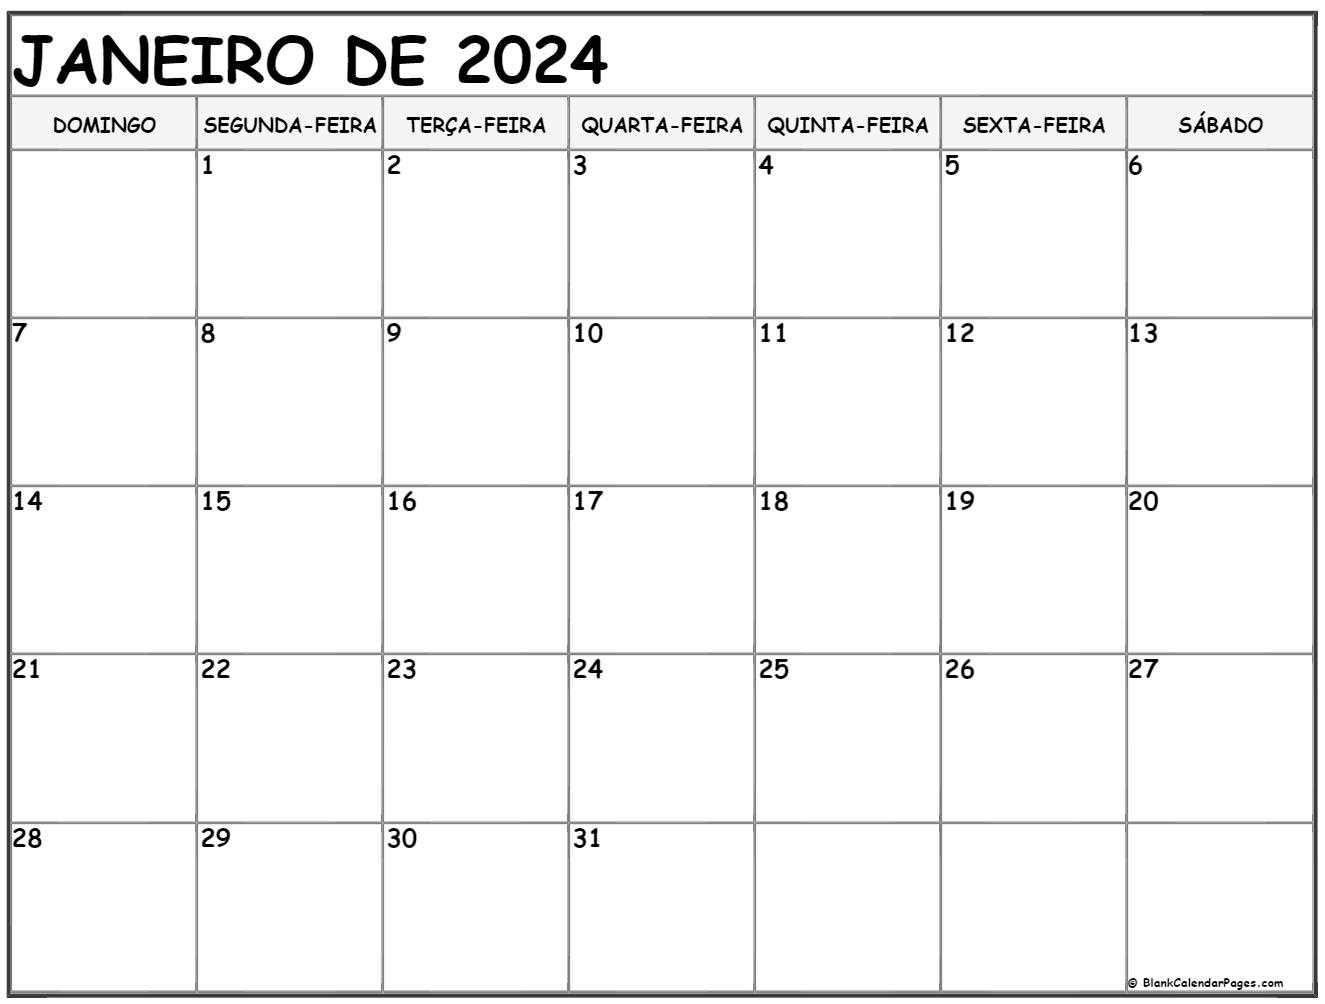 CONTINUAÇÕES DE JANEIRO 2024